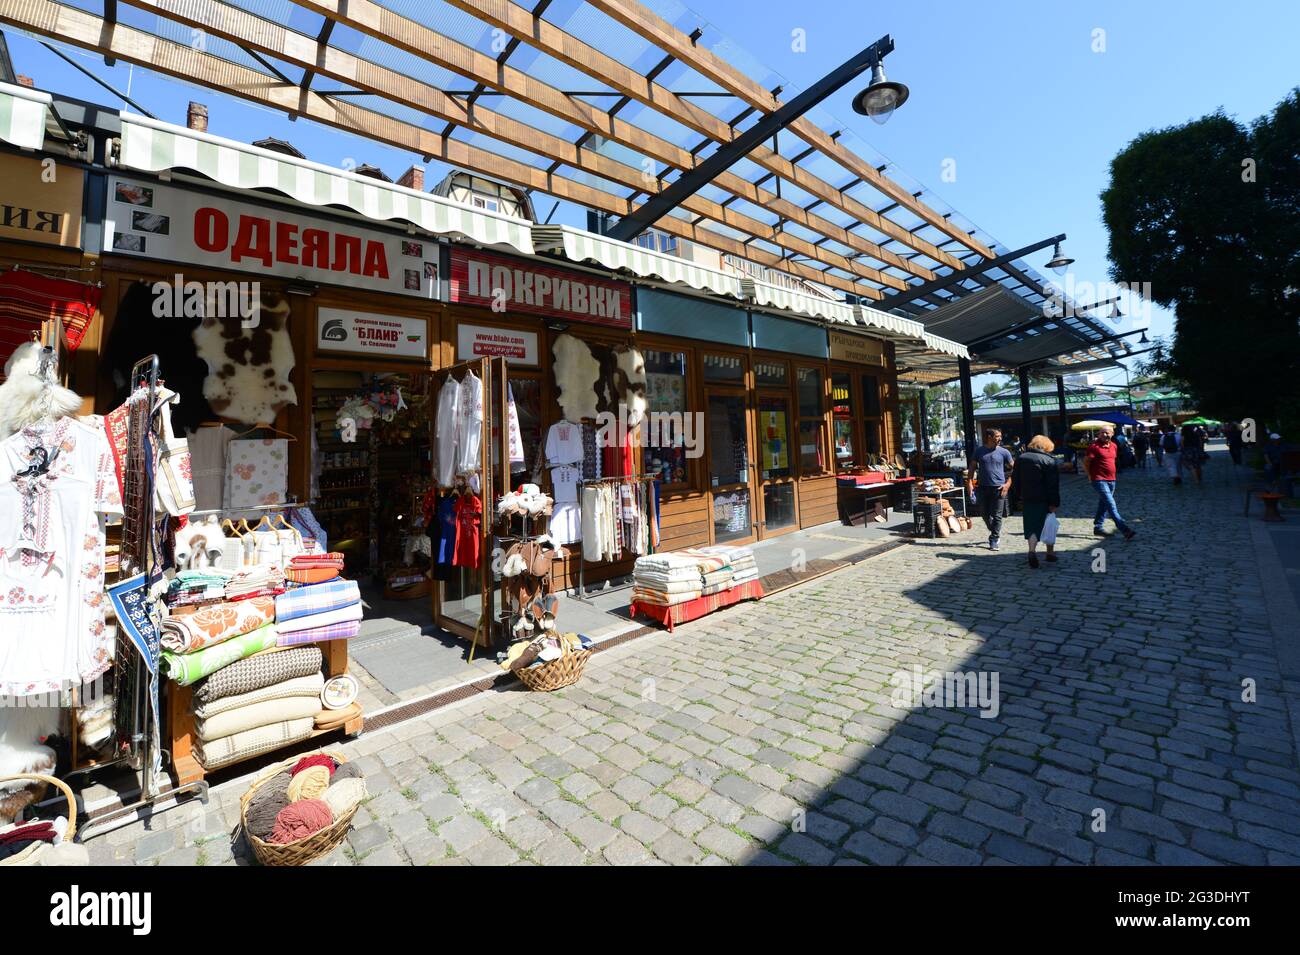 Souvenirläden auf dem Zhenski Pazar ( Ladies' Market ) ist einer der größten Märkte in Sofia, Bulgarien. Stockfoto